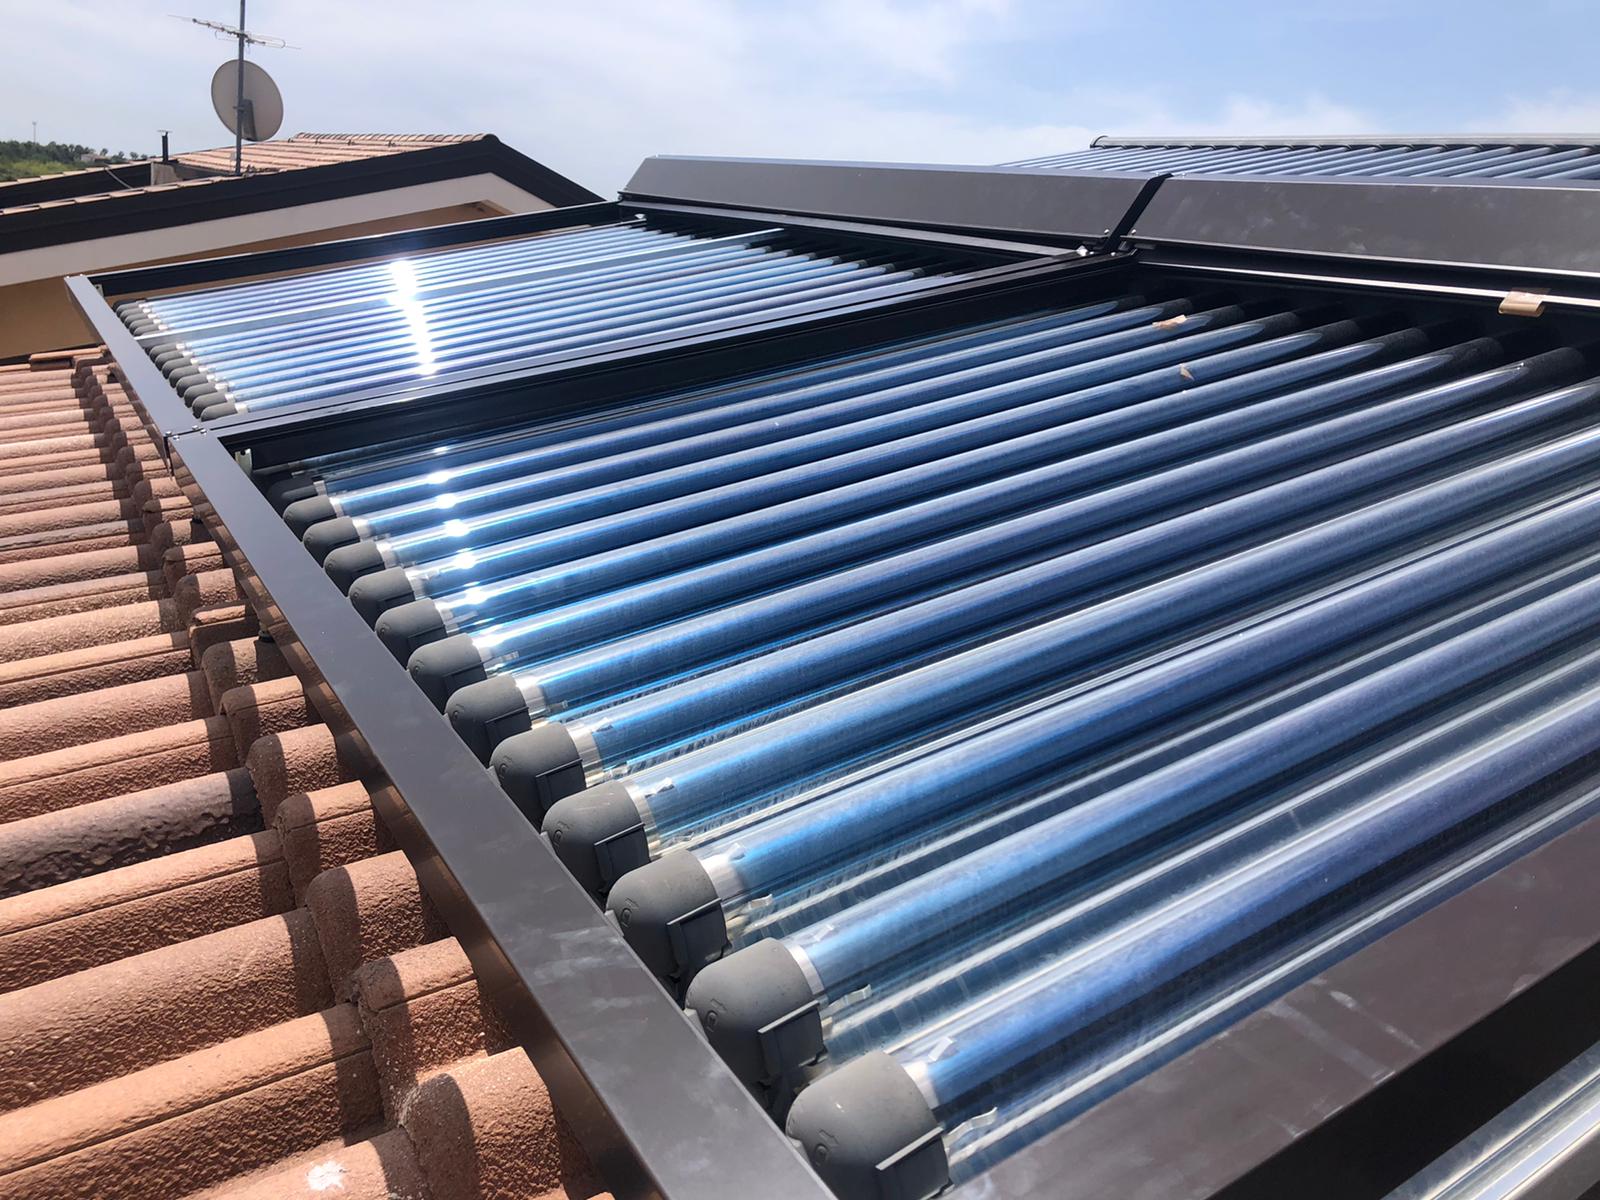 La protezione per collettori solari, resistente e adattabile